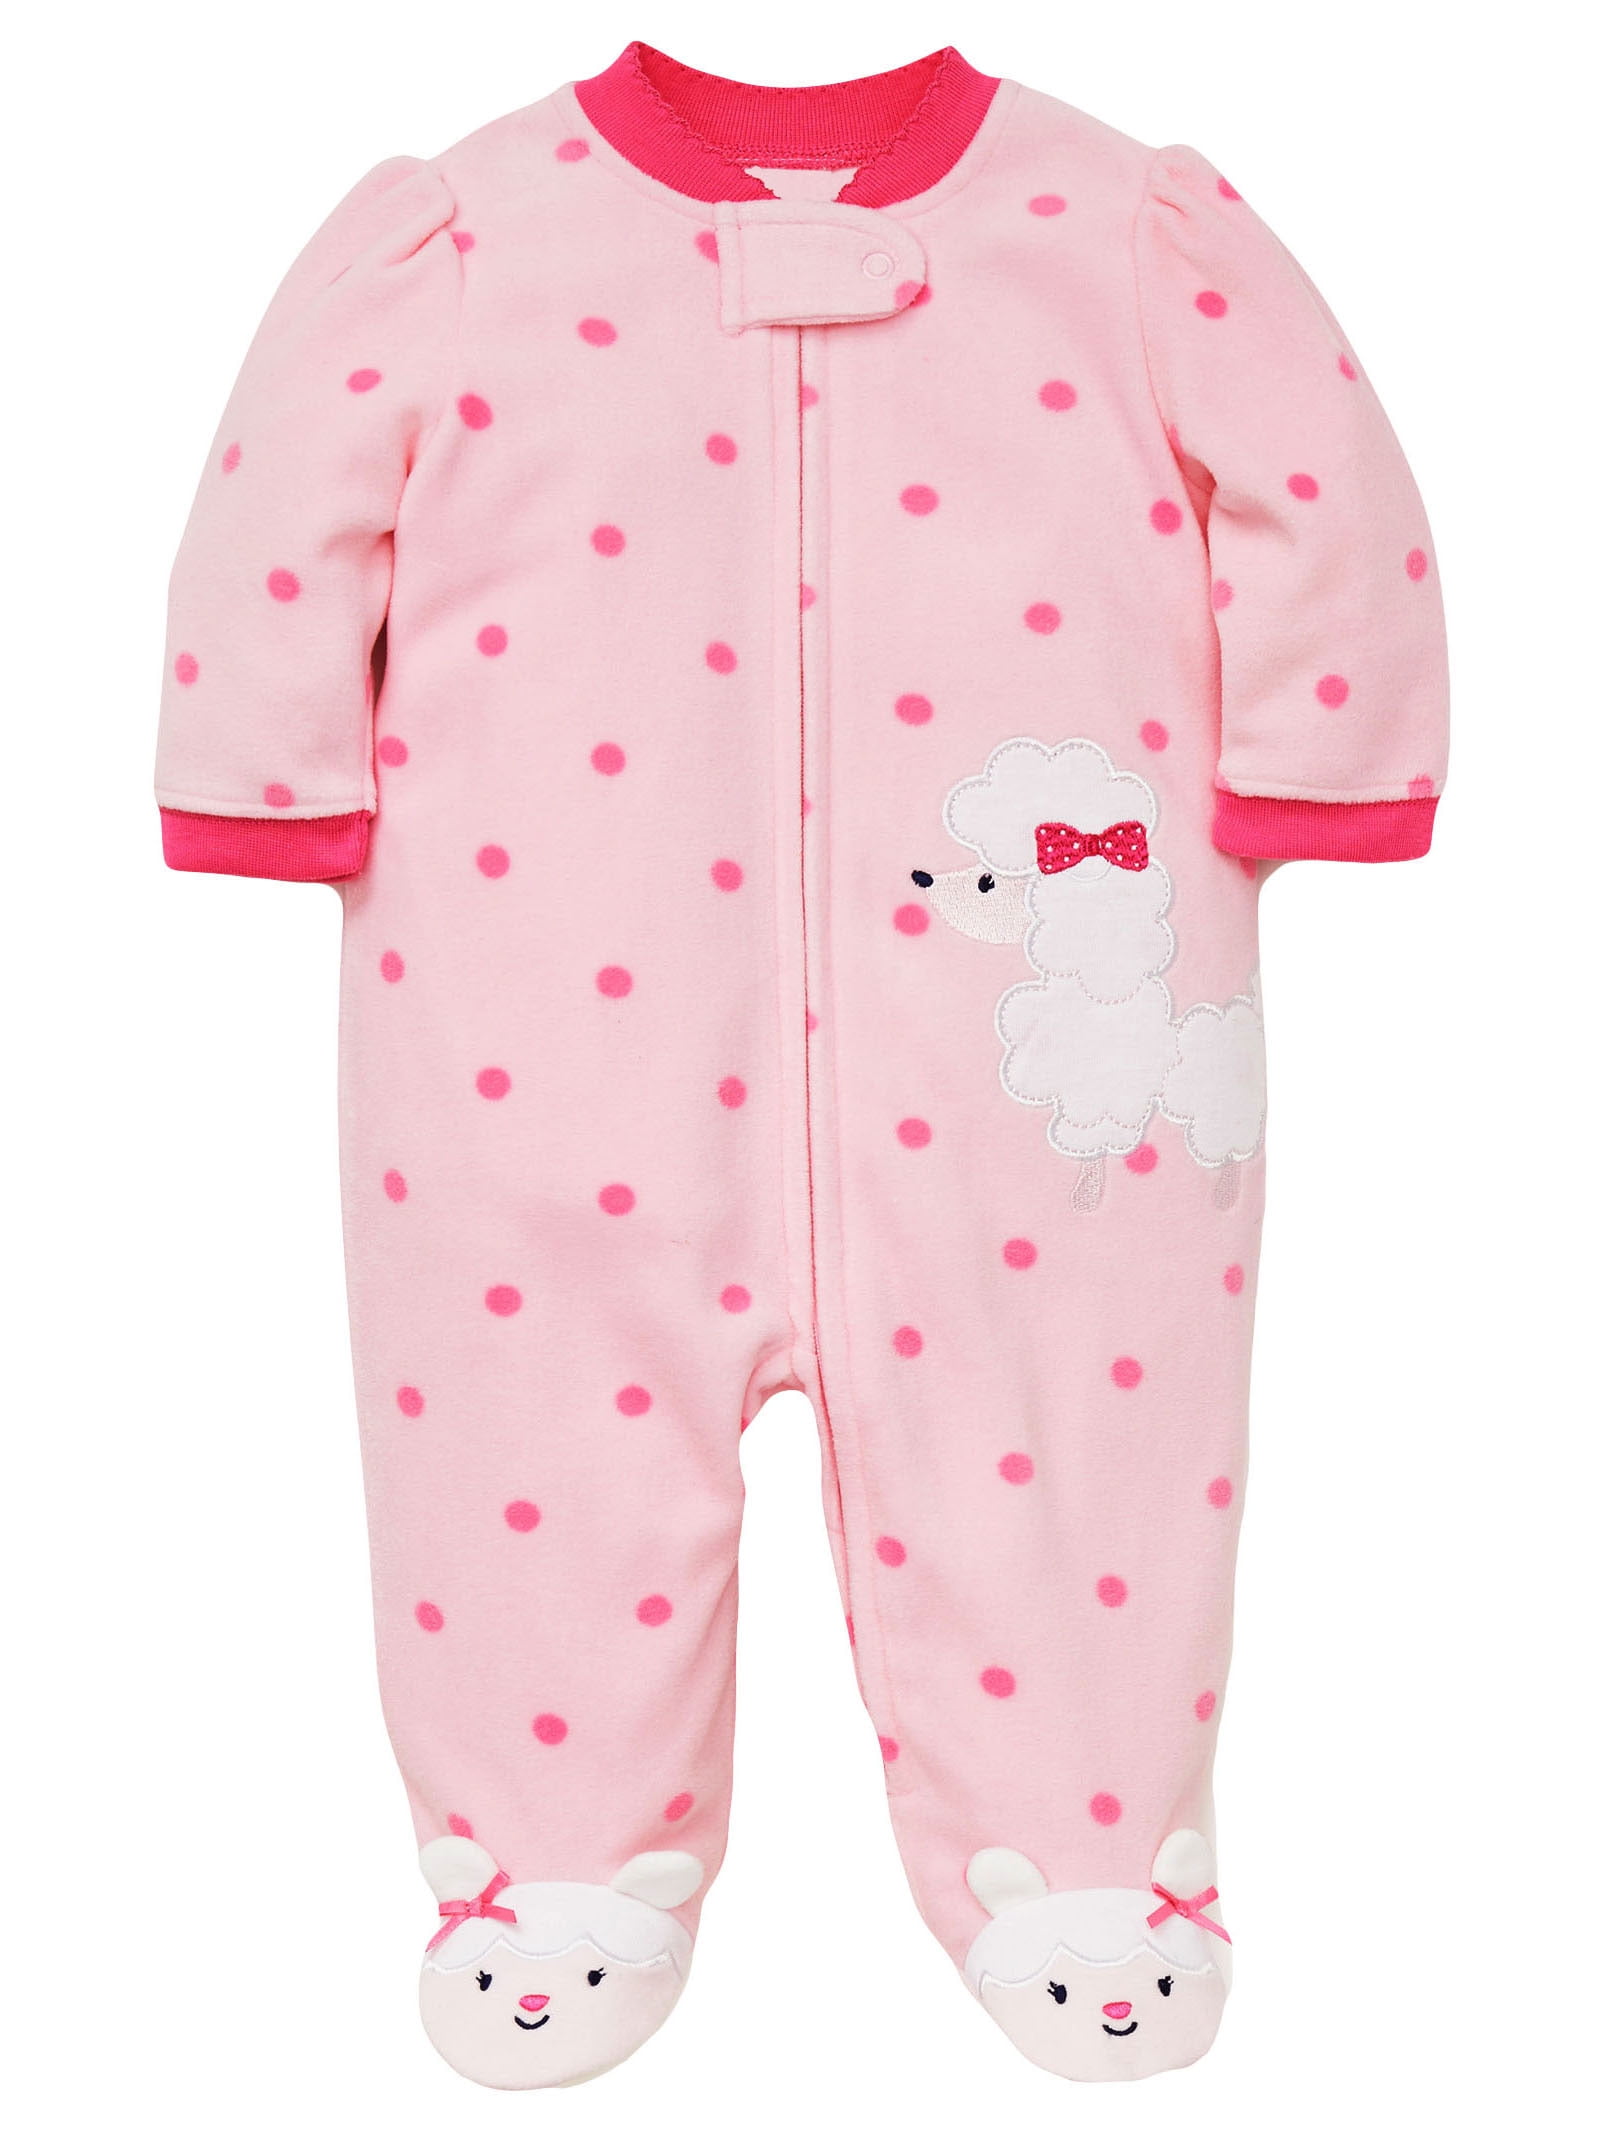 LTM Baby Baby Pajamas Winter Fleece Sleepers Footed Blanket Sleeper Footie Poodle Pink 18 Month Walmartcom Walmartcom